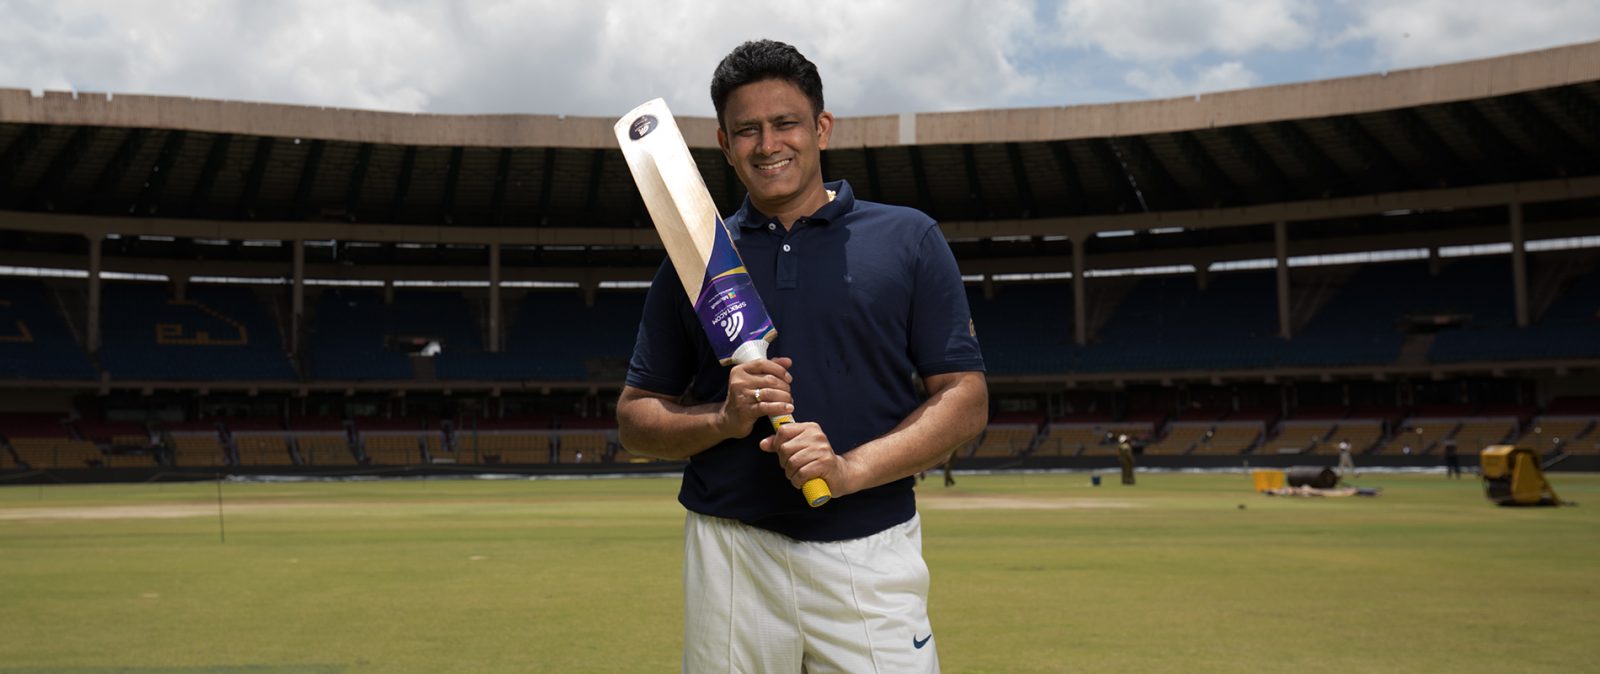 A man standing with a cricket bat inside a stadium